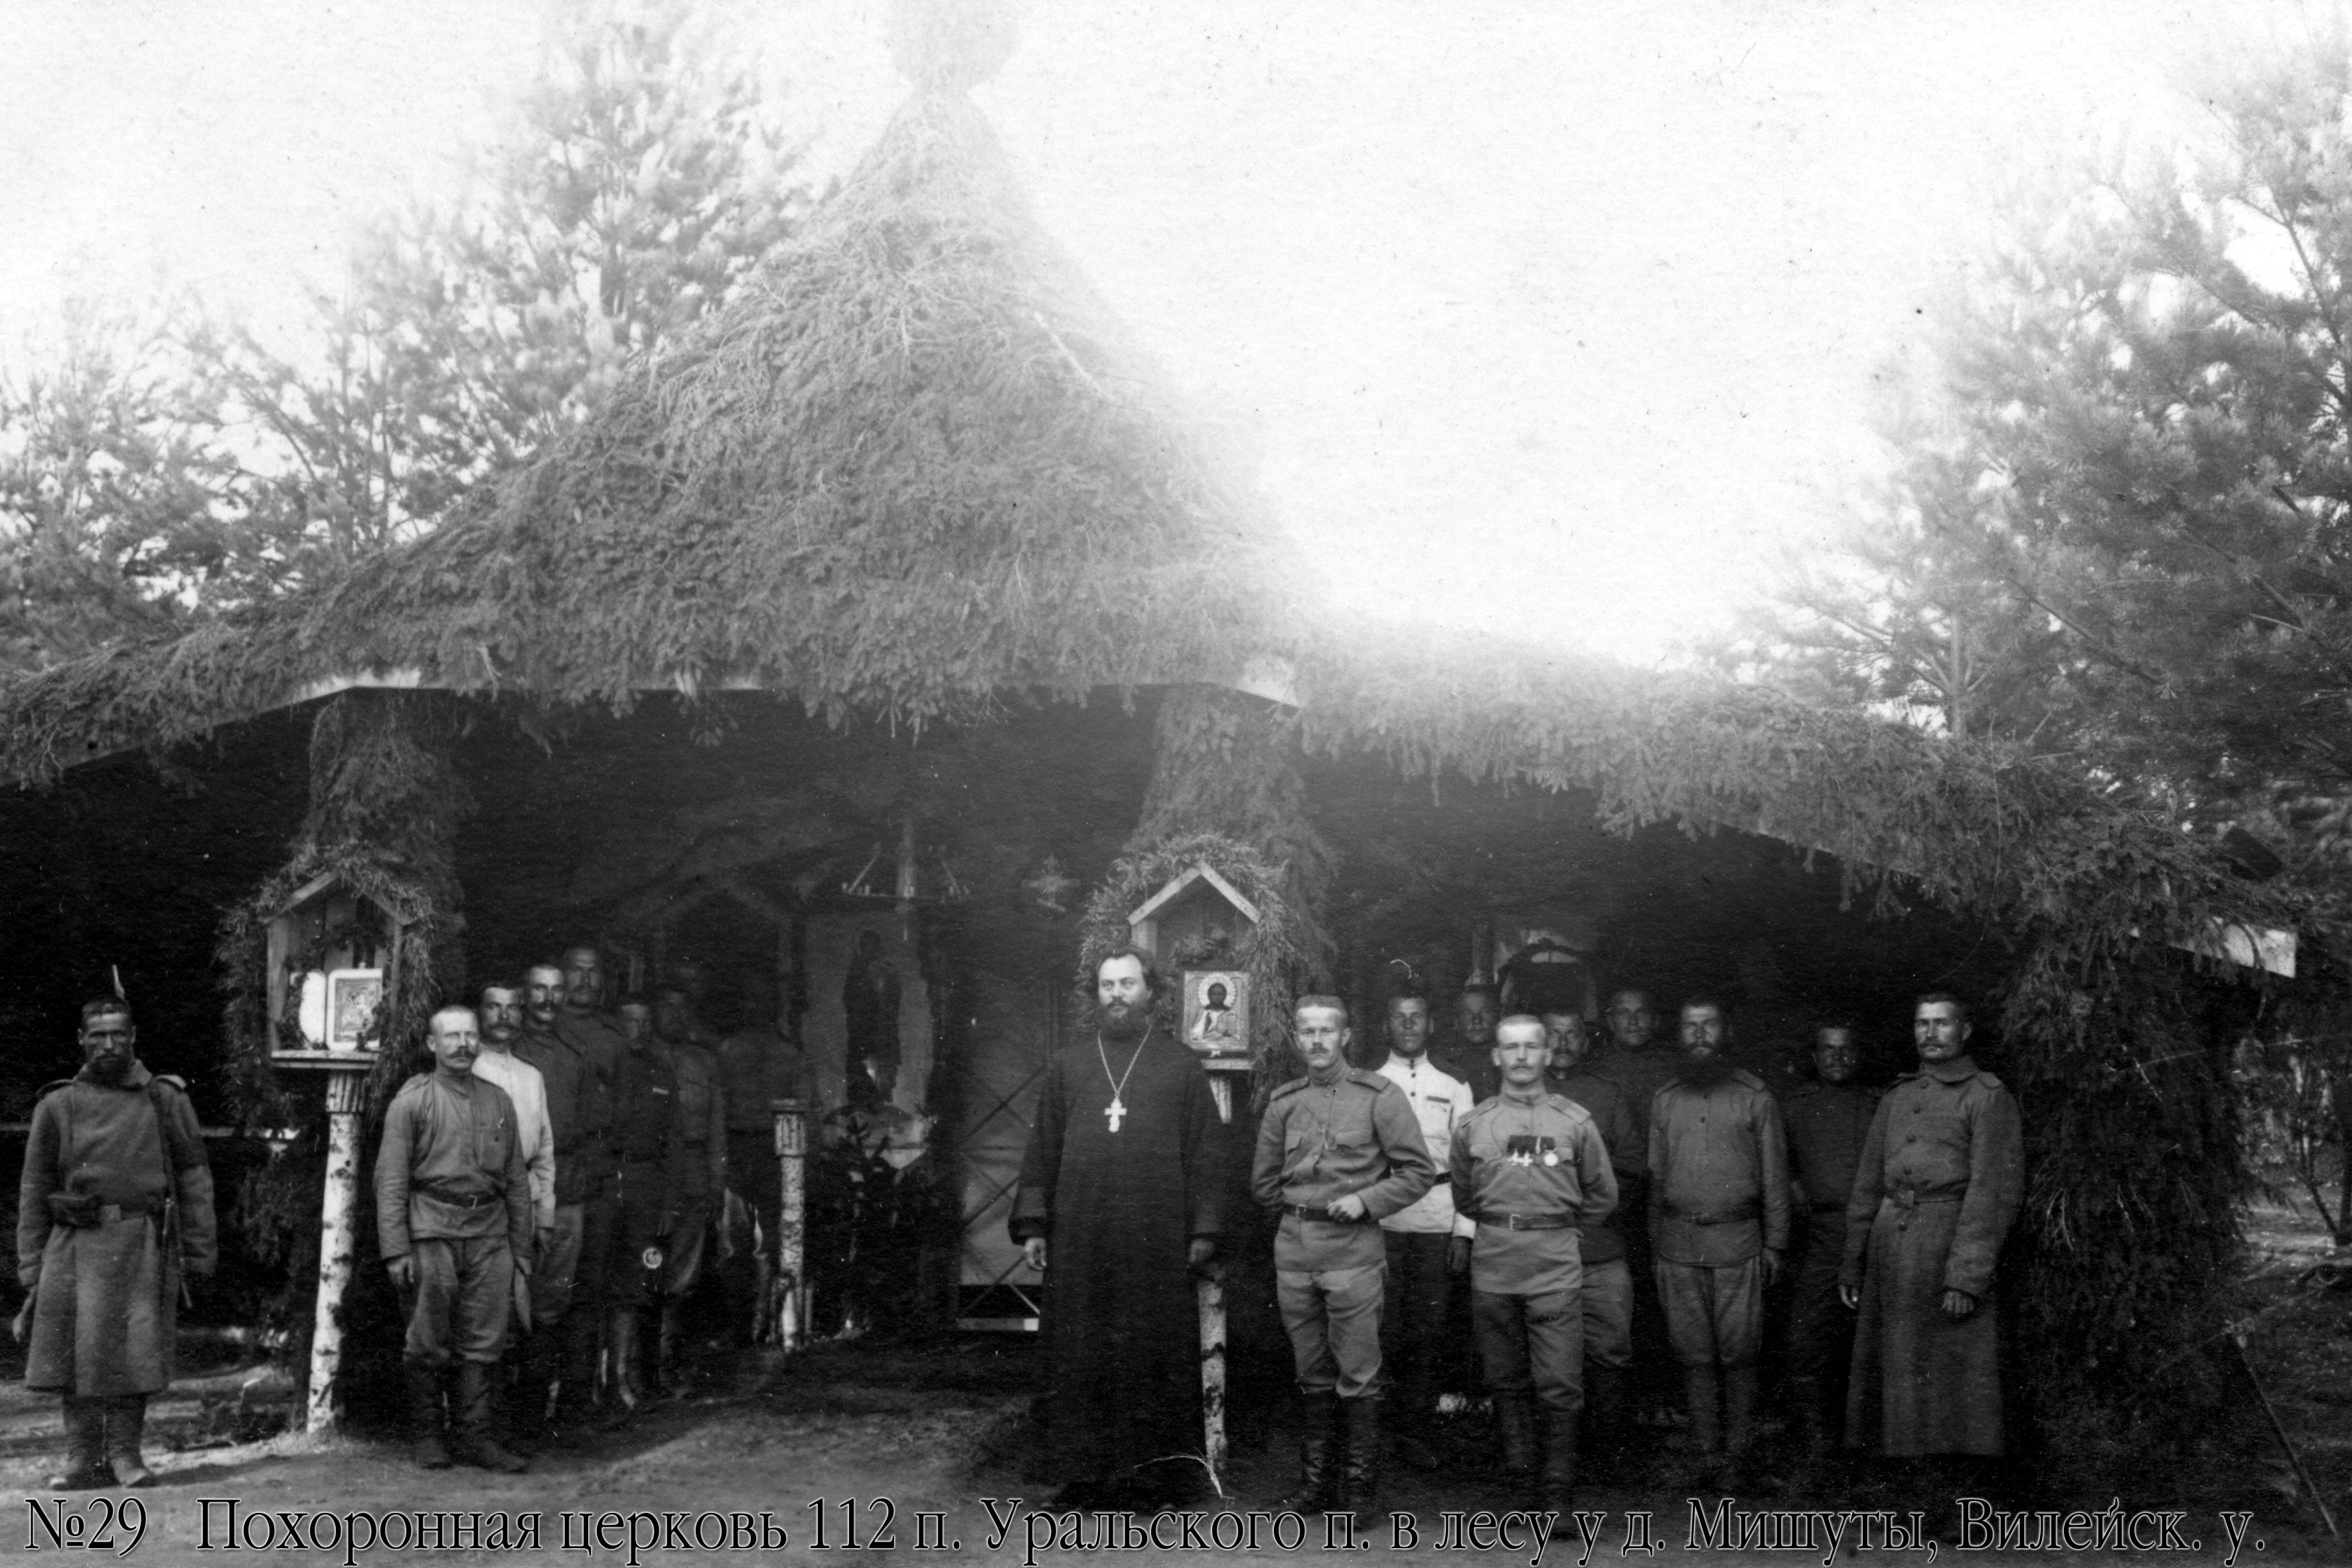 112-ojo Uralo pėstininkų pulko cerkvė miške prie Vileikos apskrities Mišutų kaimo